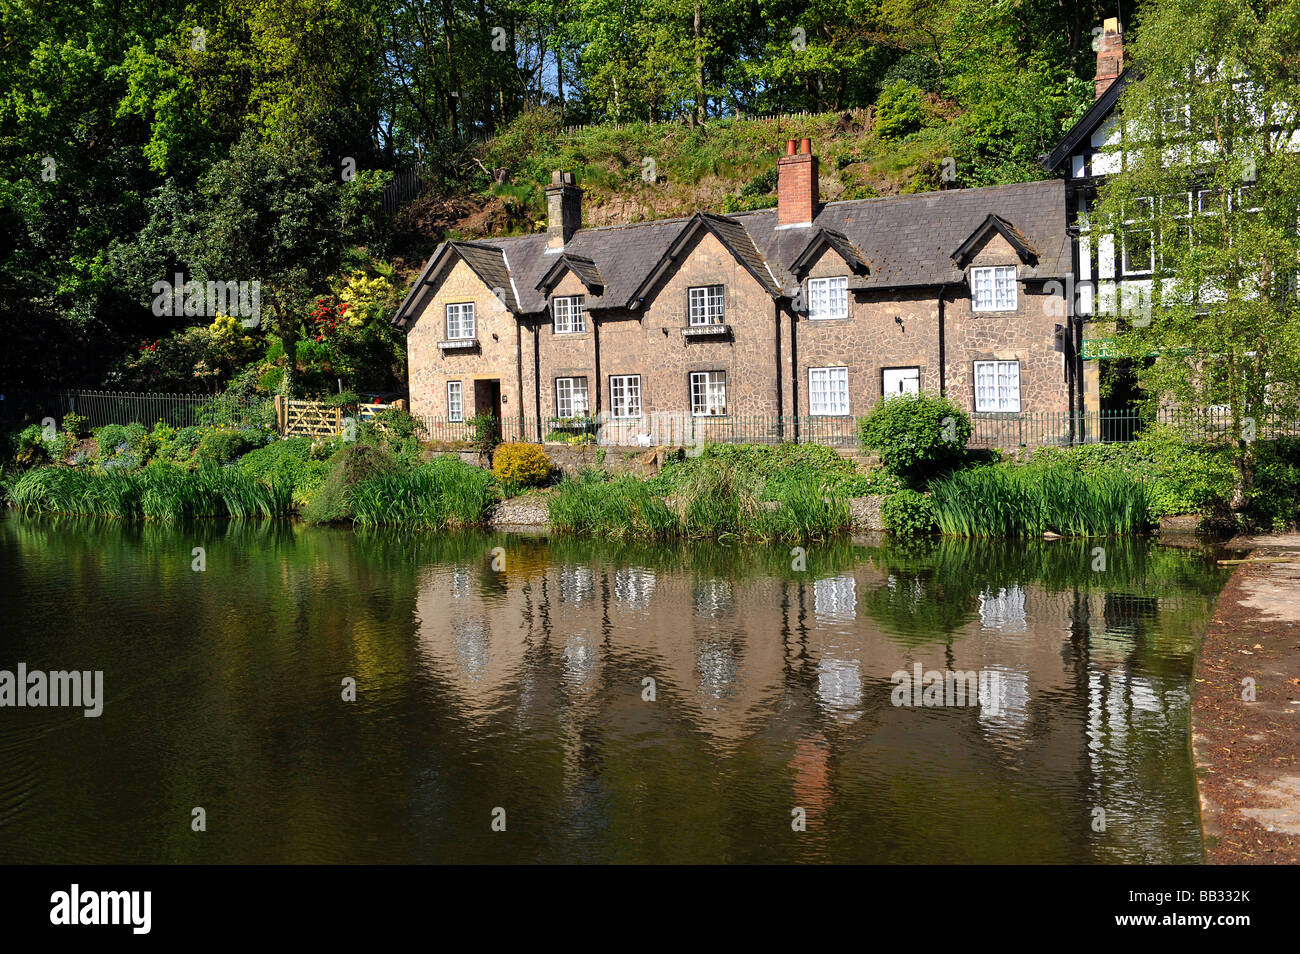 Vue sur l'étang et de cottages à Eagle Brow, Lymm, Cheshire, Angleterre Banque D'Images